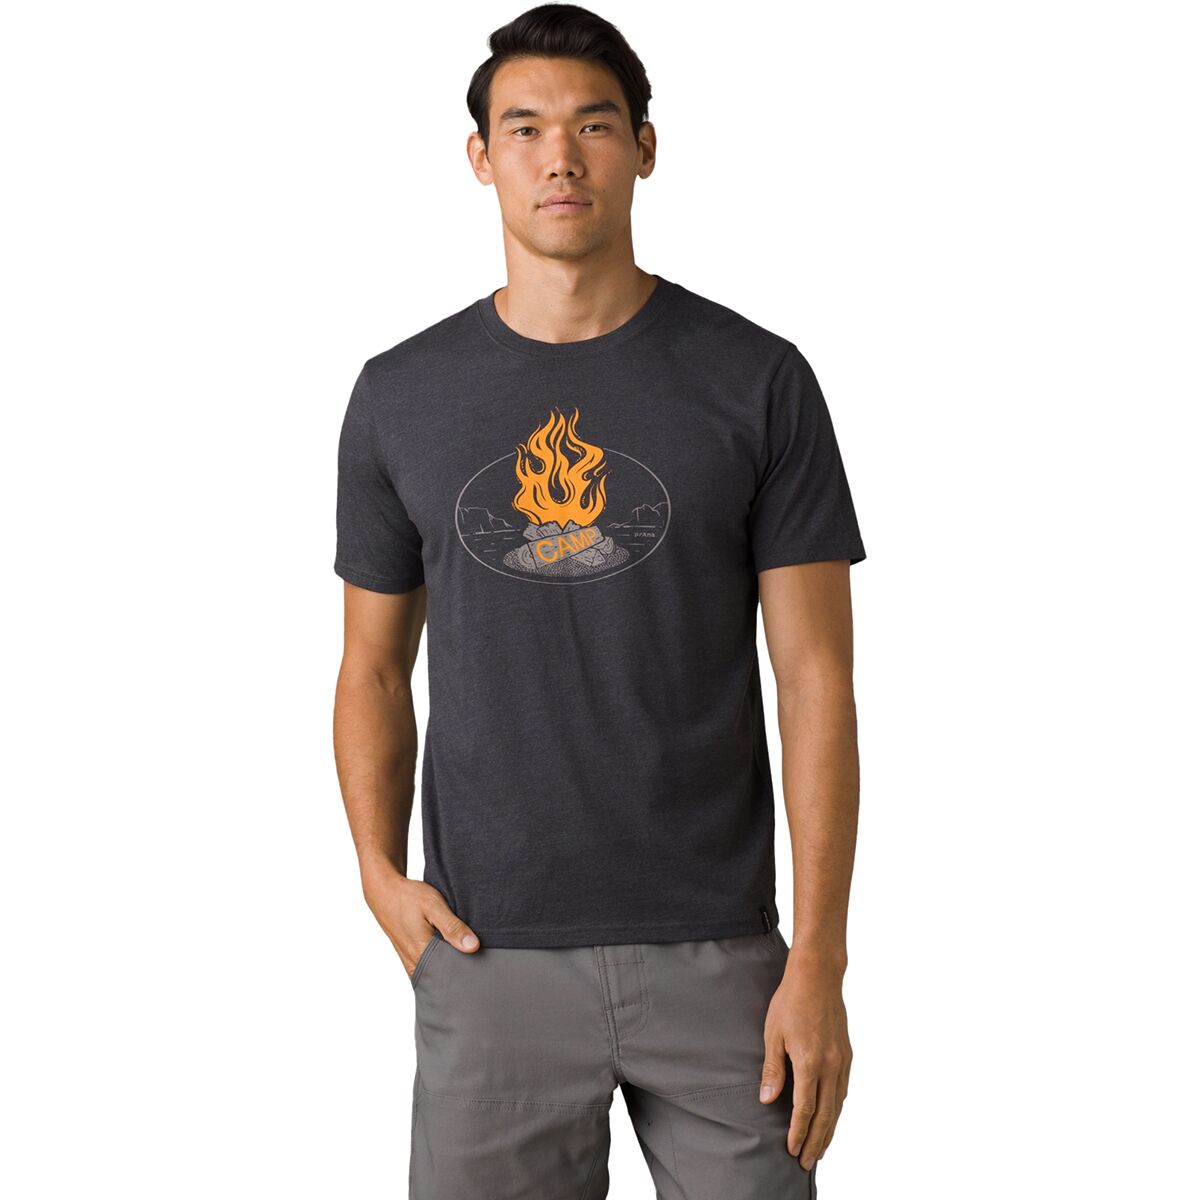 Camp Fire Journeyman 2 Shirt - Men